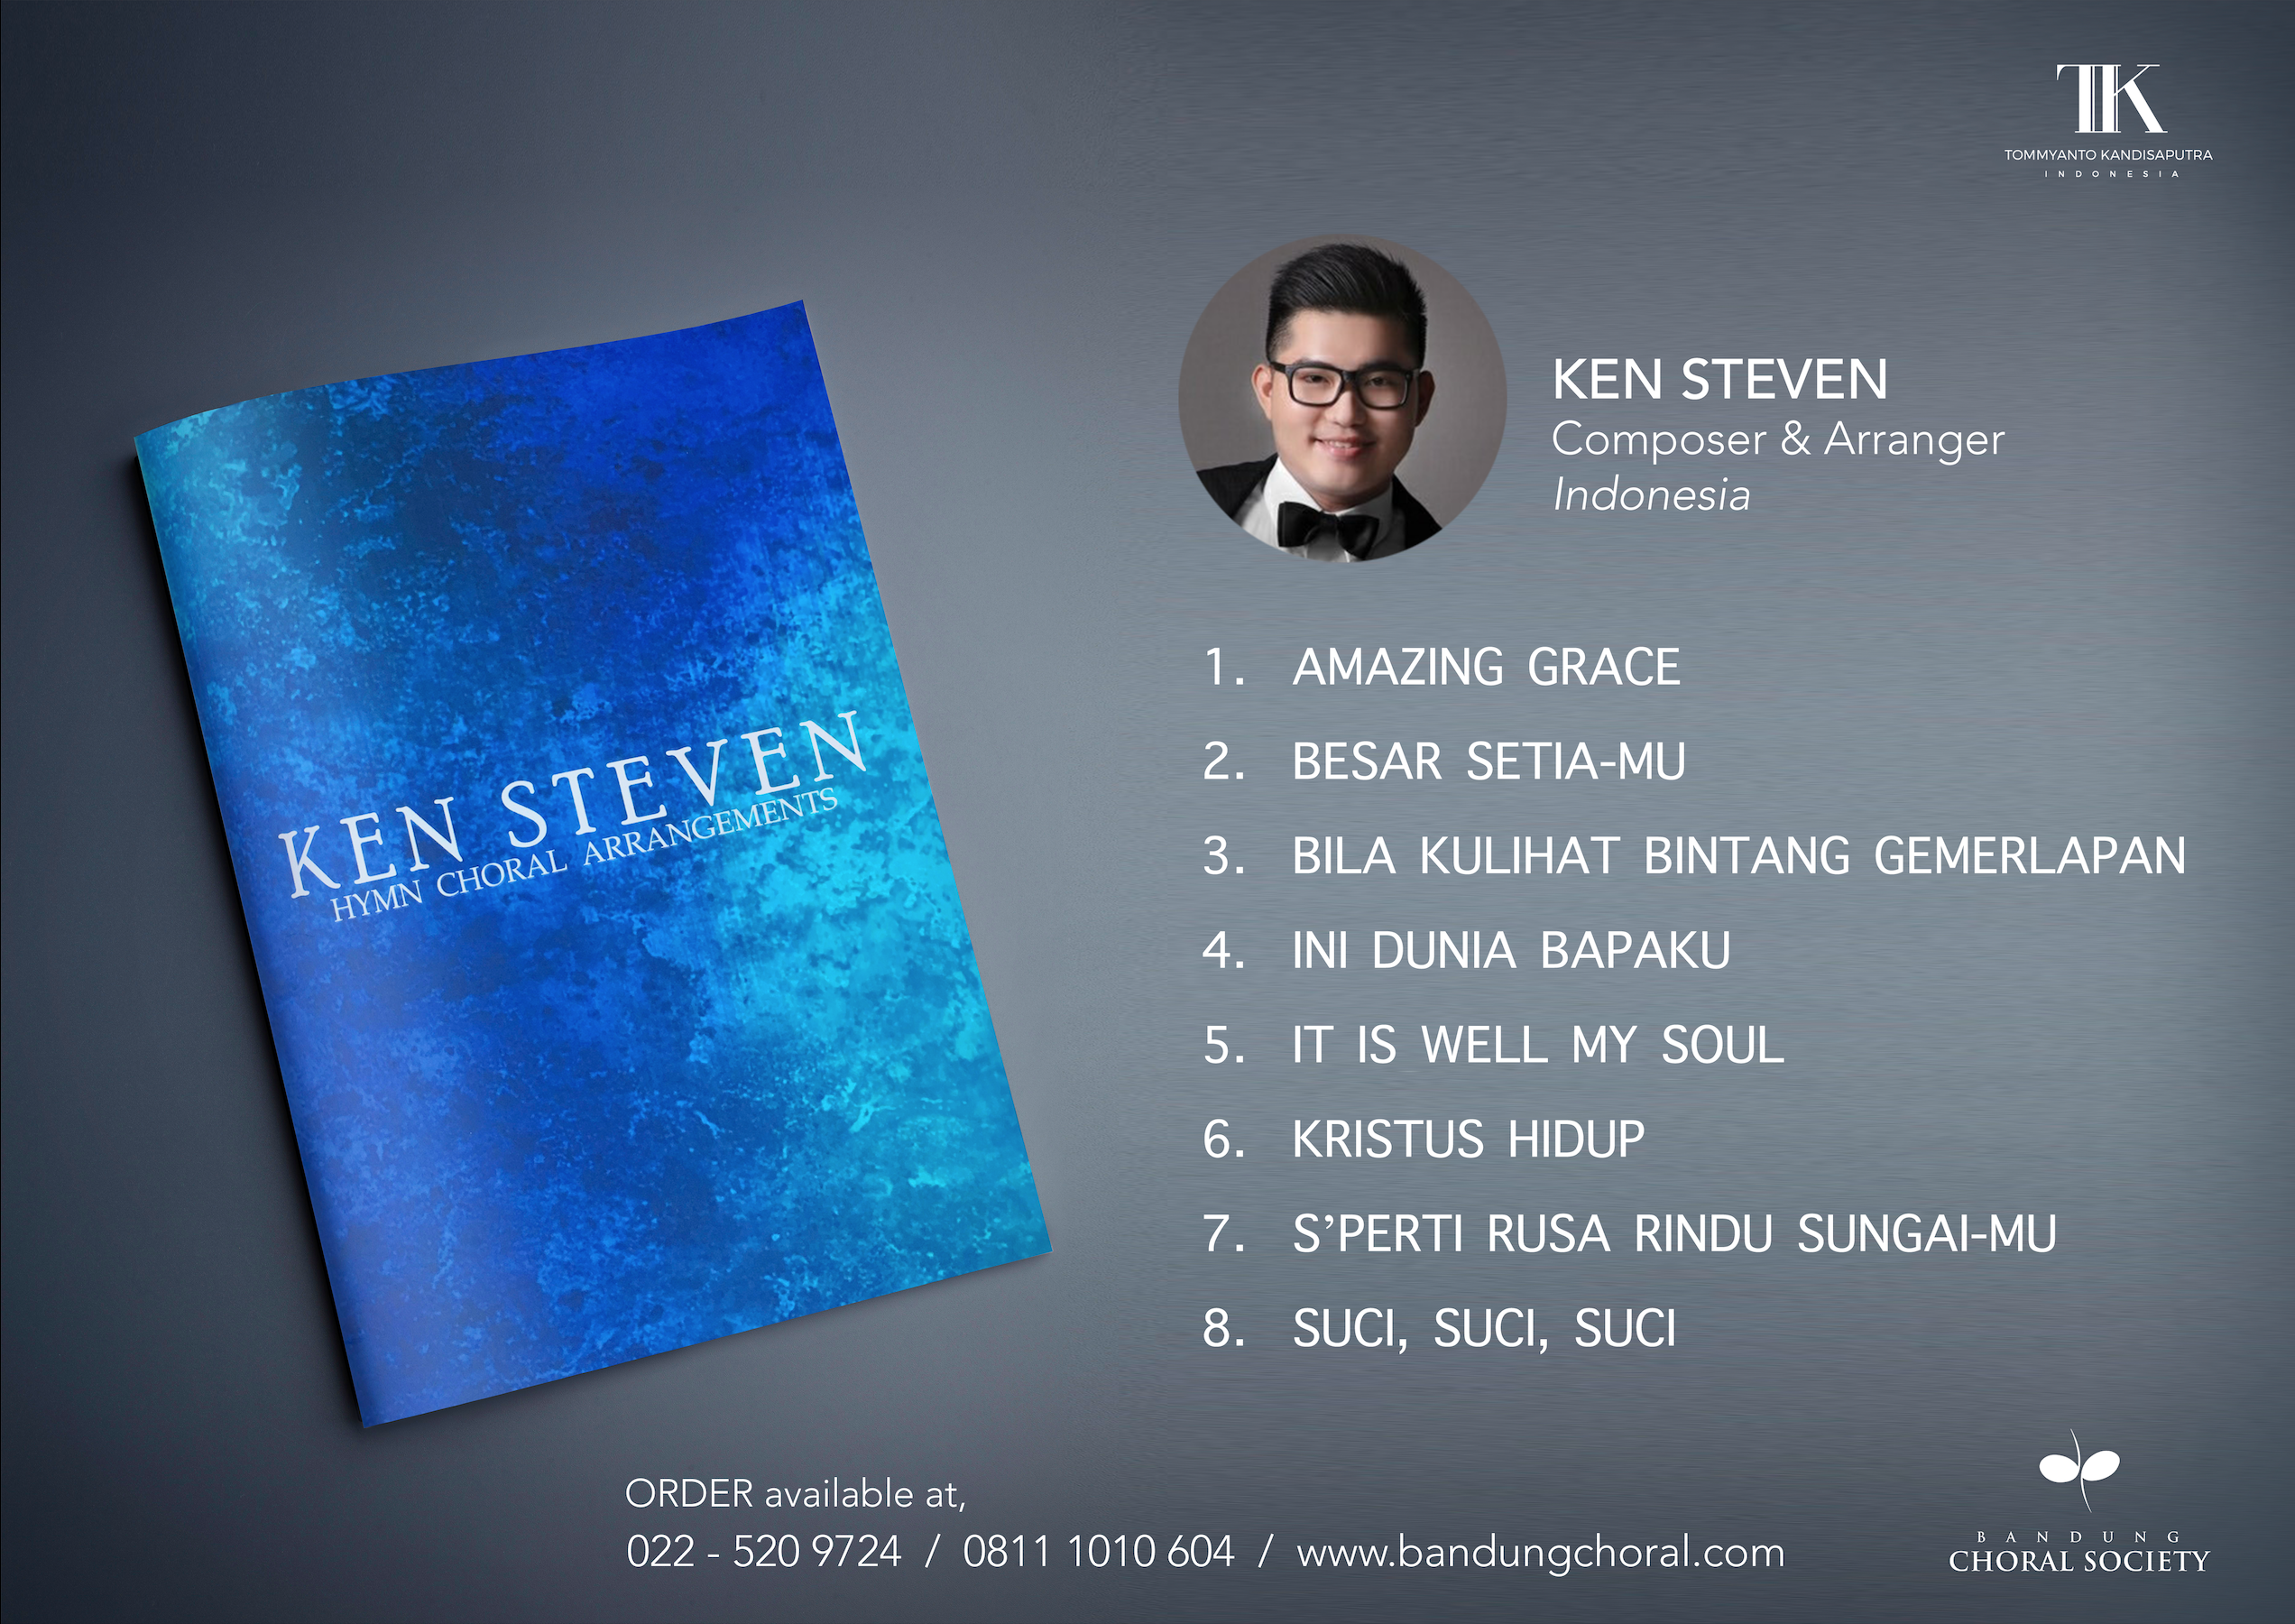 Ken Steven Hymn Choral Arrangement